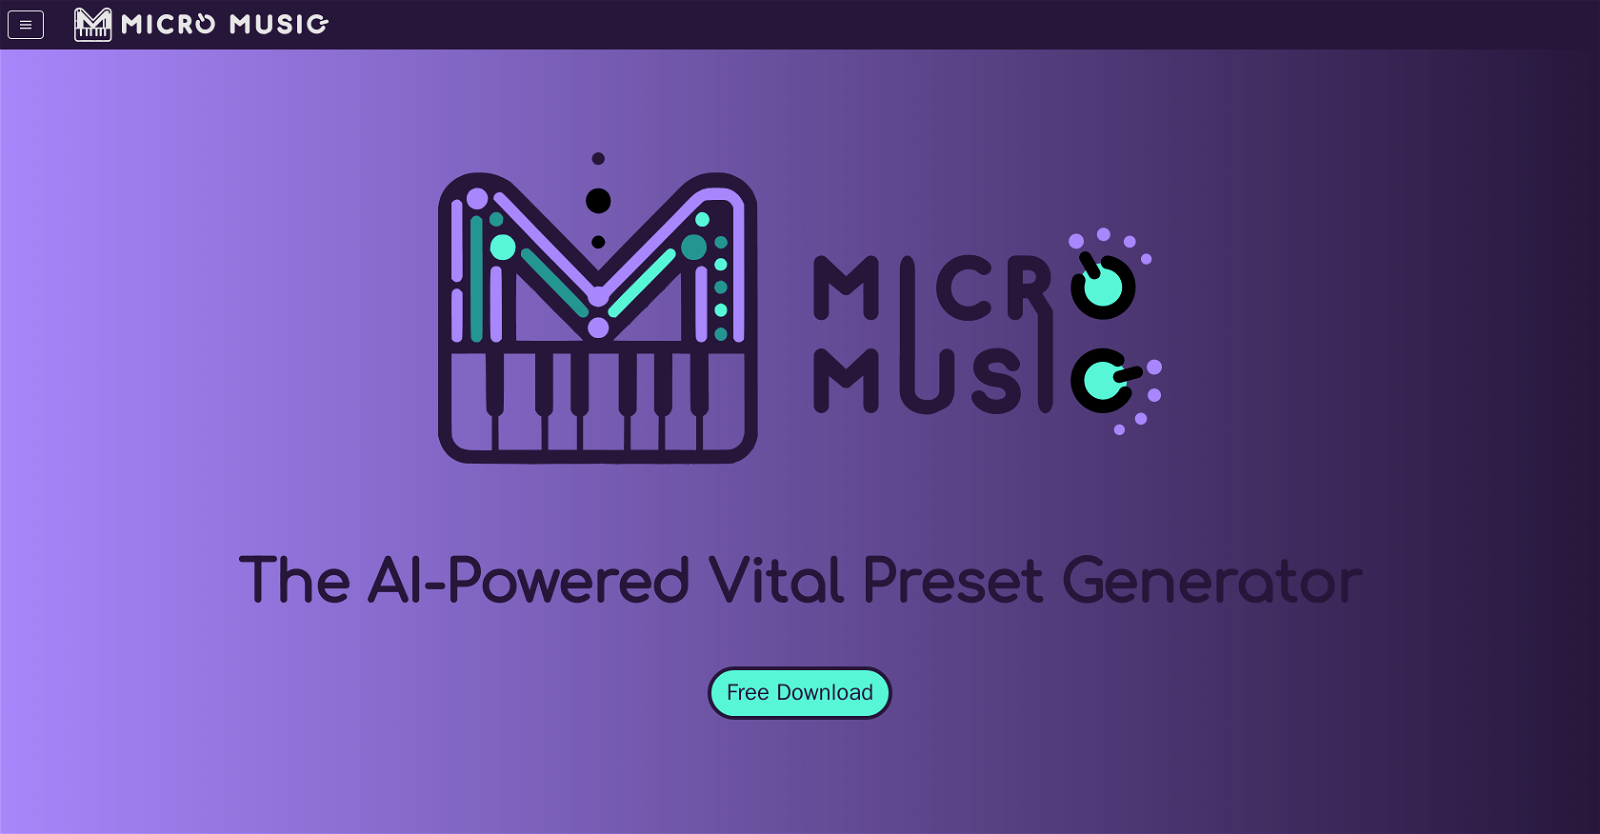 MicroMusic website